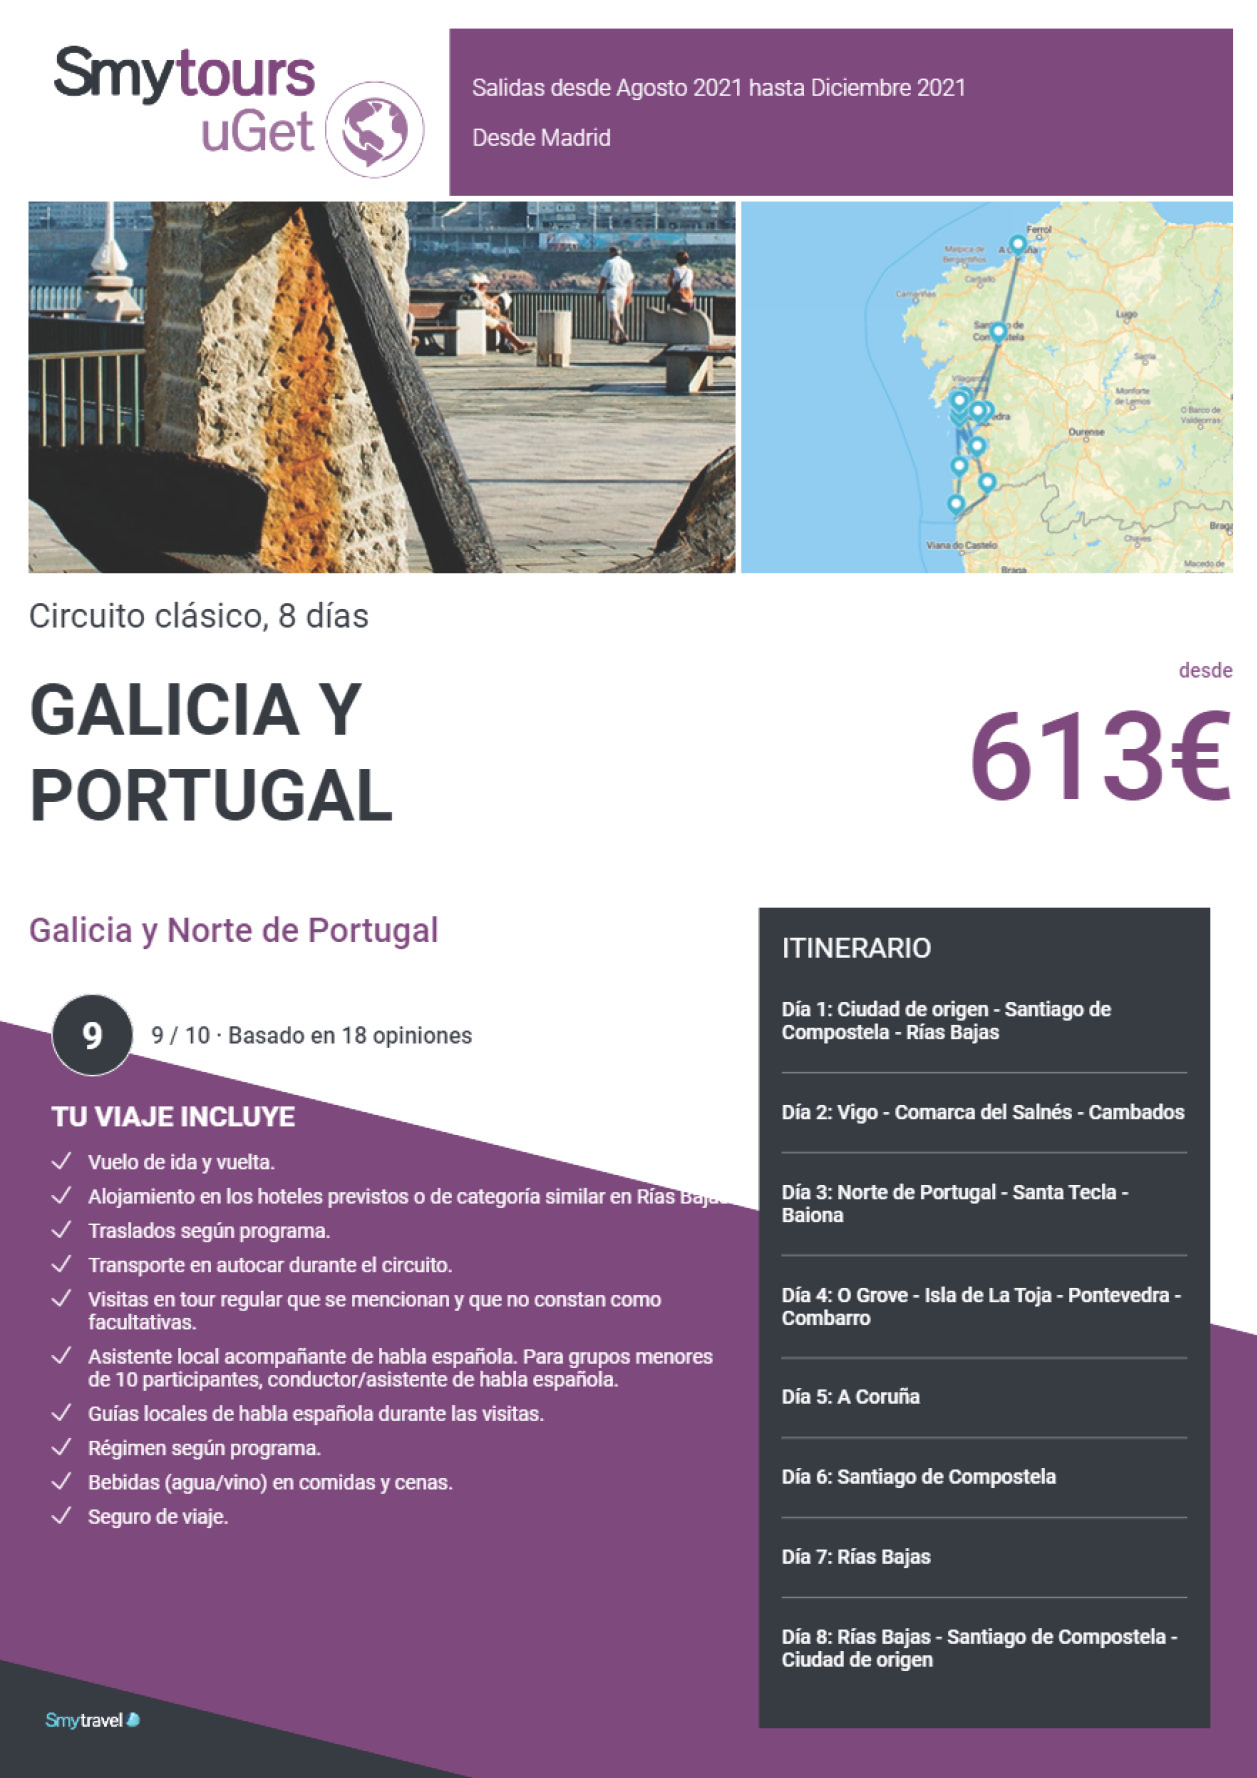 Oferta Smytravel Circuito Galicia y Norte de Portugal 8 dias salidas Madrid desde 613 €